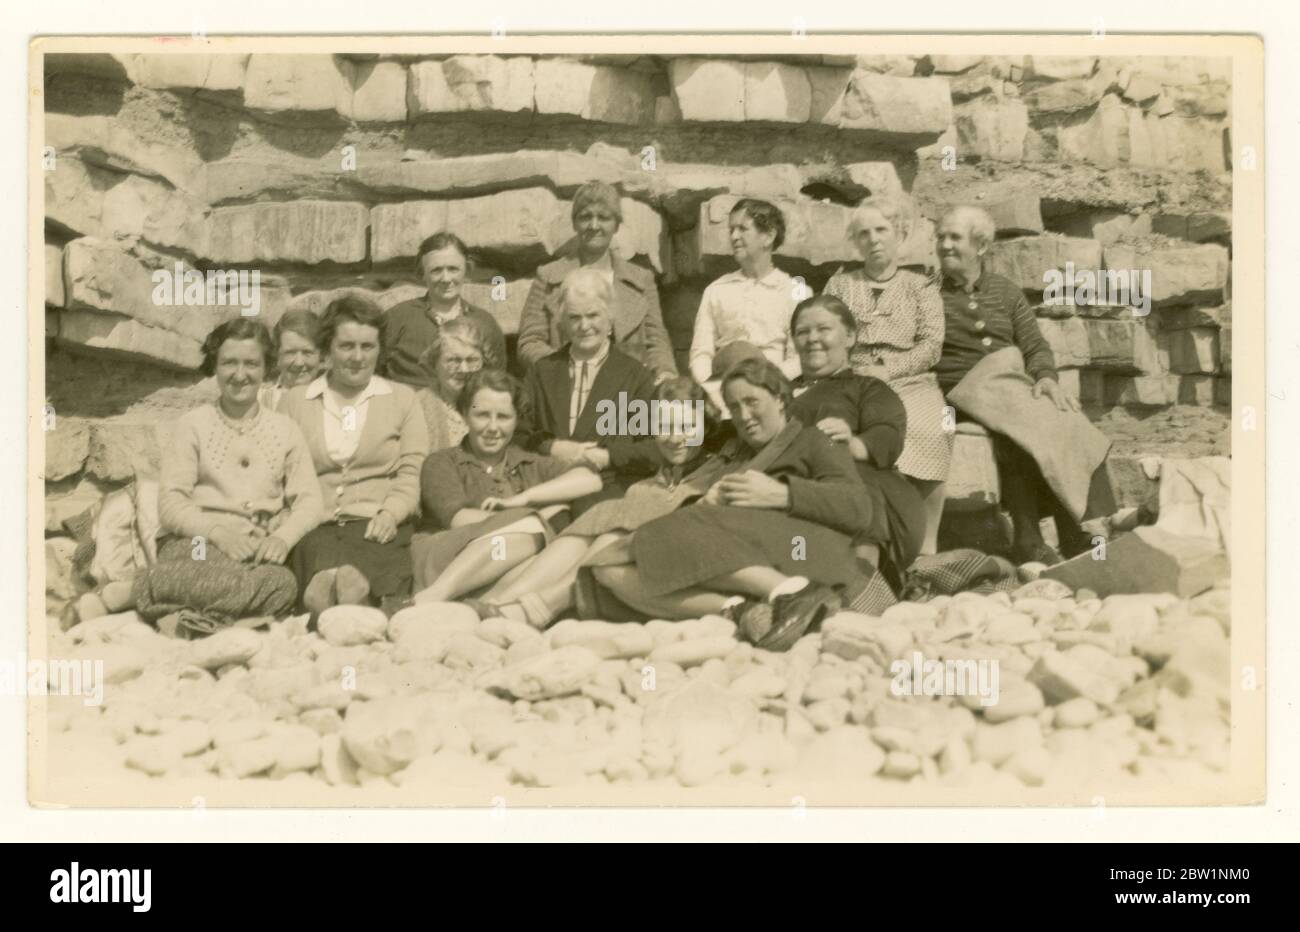 Anfang der 1900er Jahre Postkarte mit einer großen Gruppe älterer Menschen, altmodische Kleidung, freche Tagesausflügler, die am Strand im Schutz einer felsigen Klippe sitzen, um die 1930er Jahre, UK Retro Beach Foto. Stockfoto